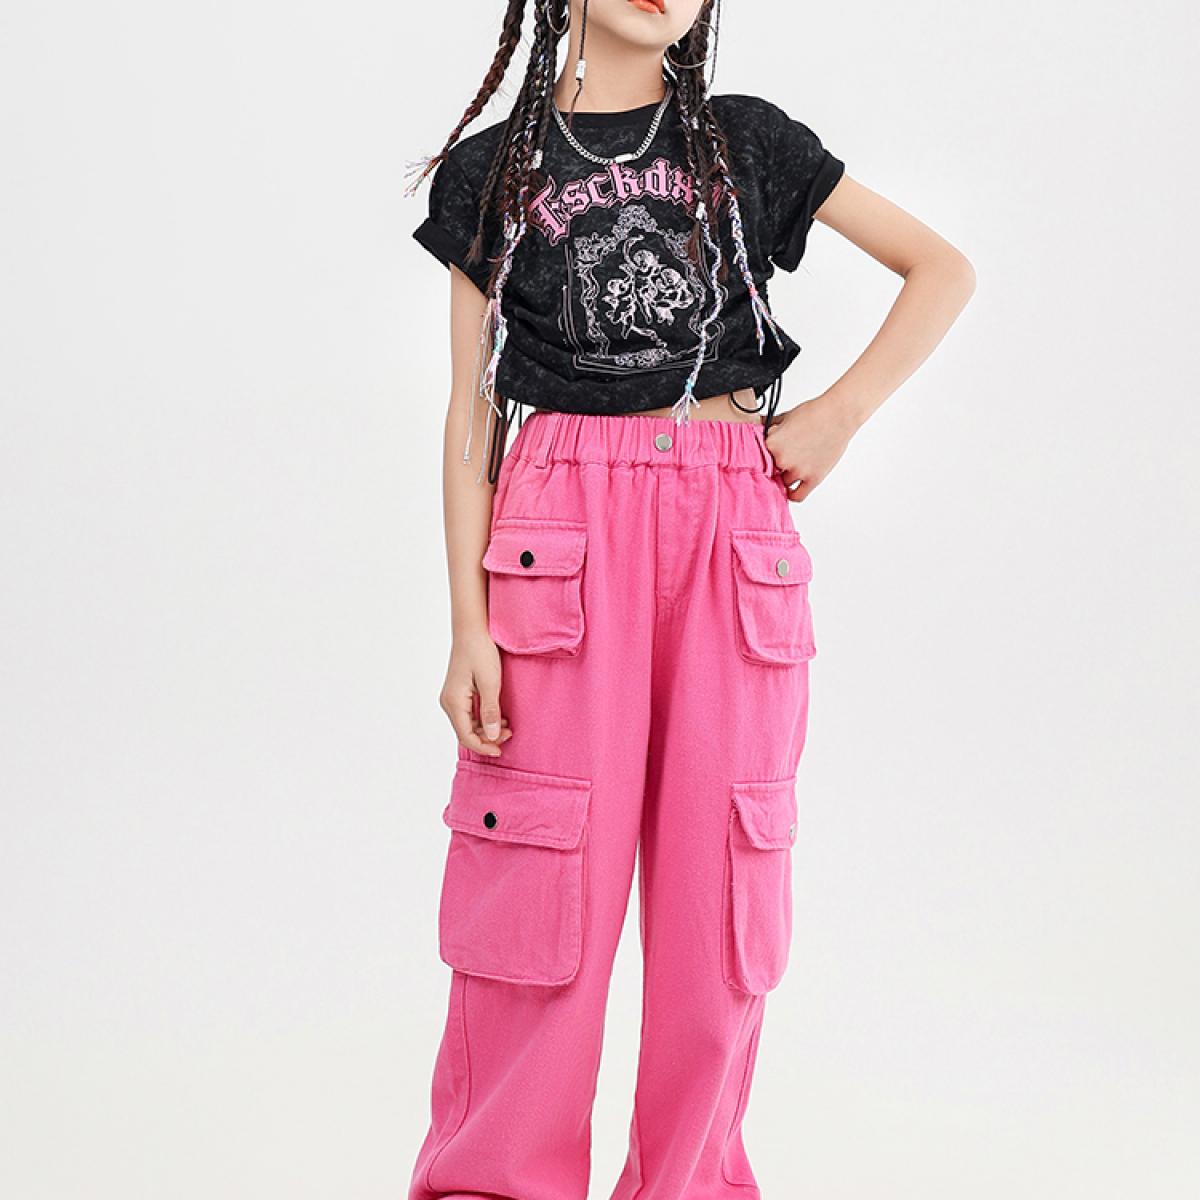 Summer Kids Clothes Girls Hip Hop Dance Costume Short Sleeved Tops Cargo  Pants Street Dance Jazz Dancing Outfit Kpop Wear BL8619